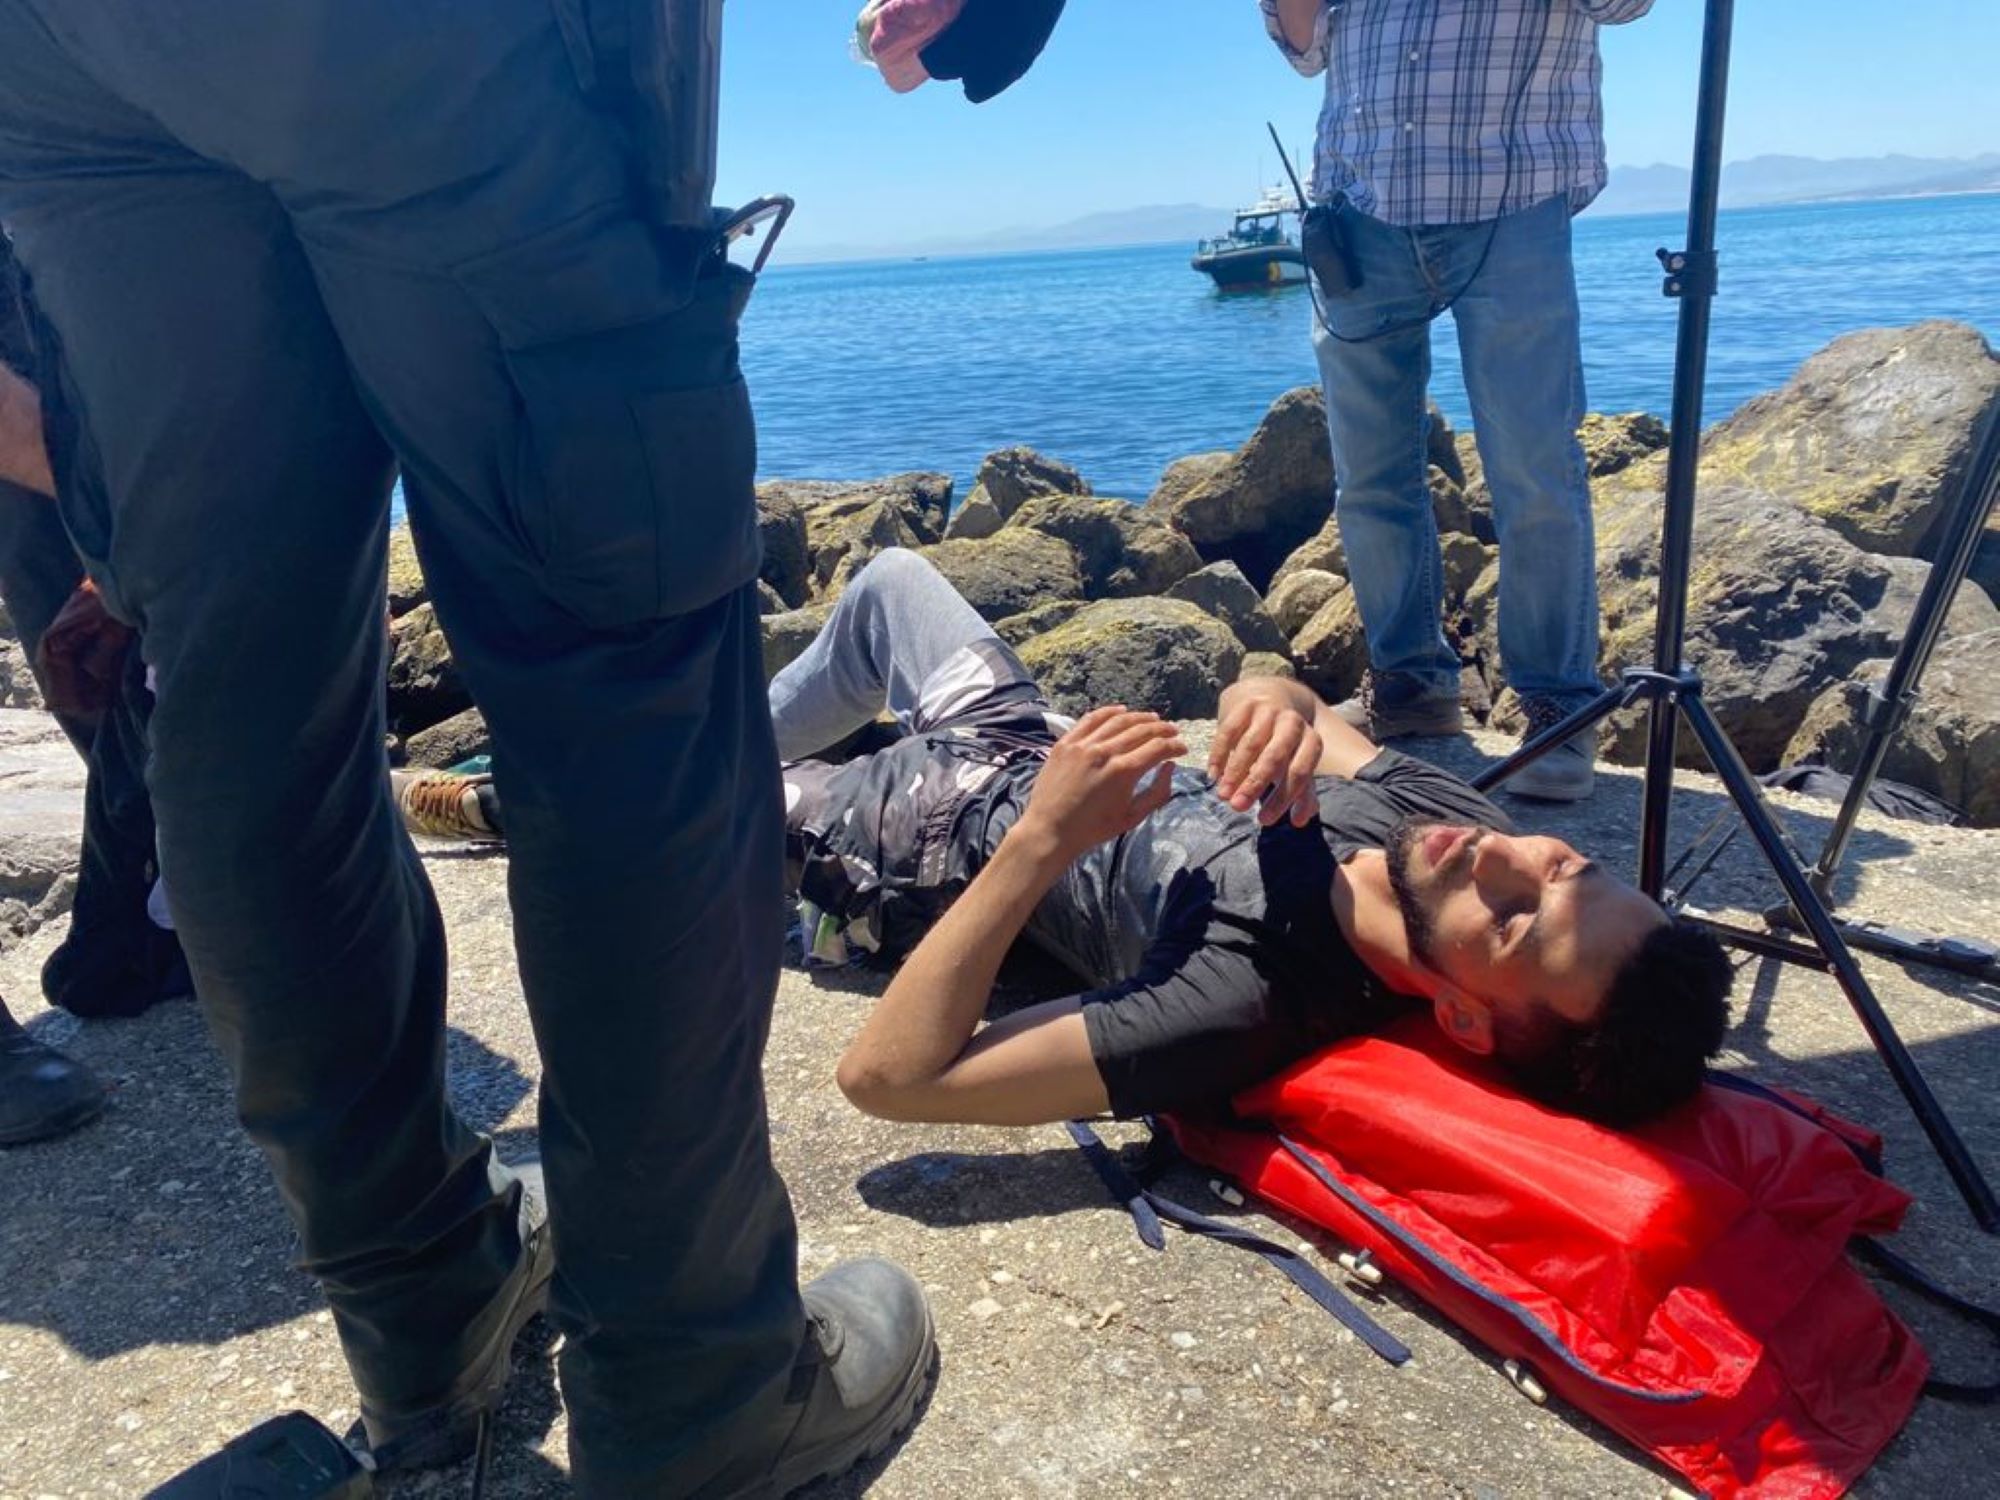 Els migrants de Ceuta, del mar a la frontera: “Només vull treballar”